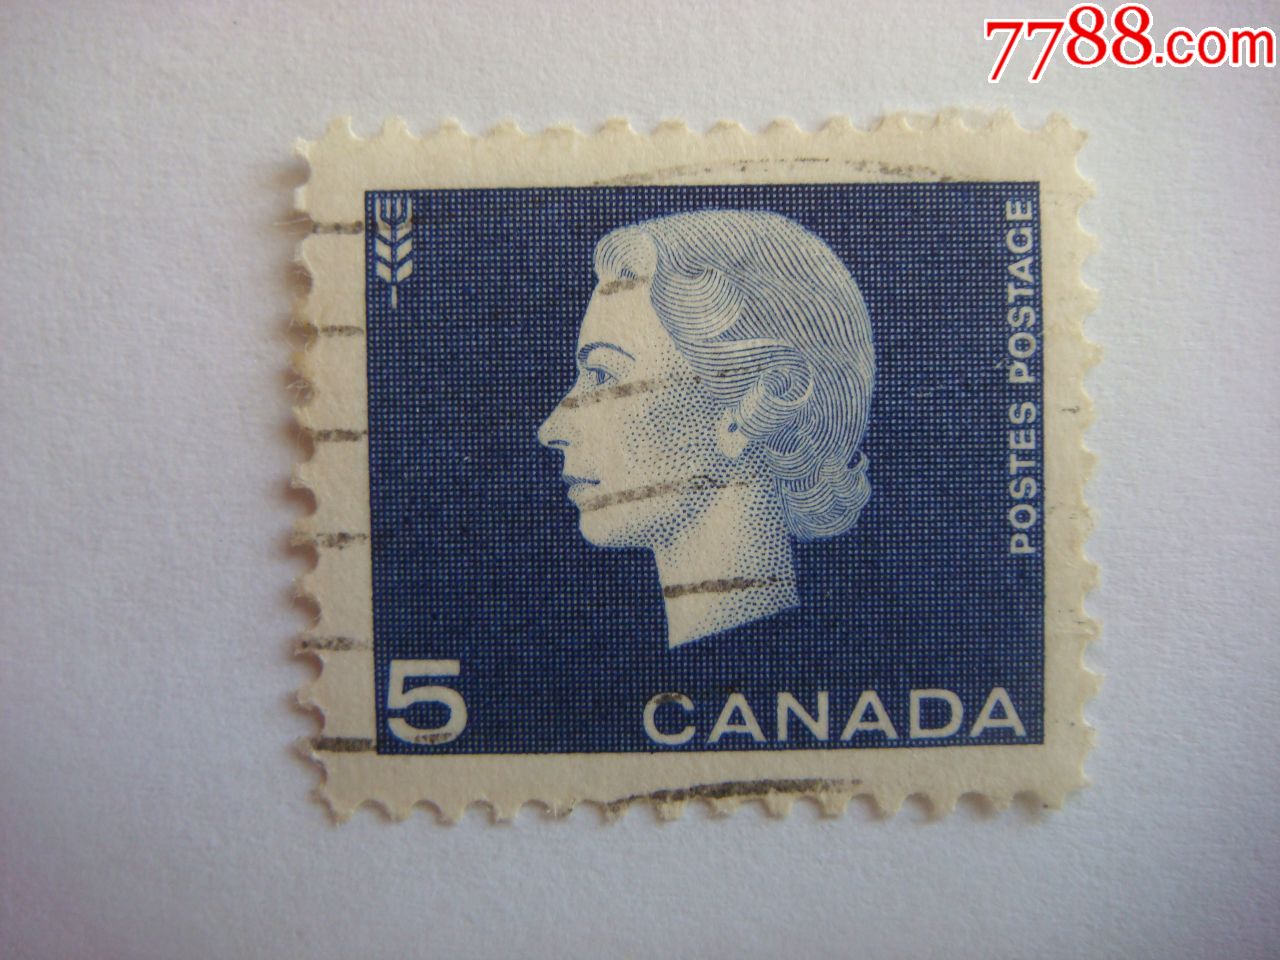 来自加拿大的邮票图片